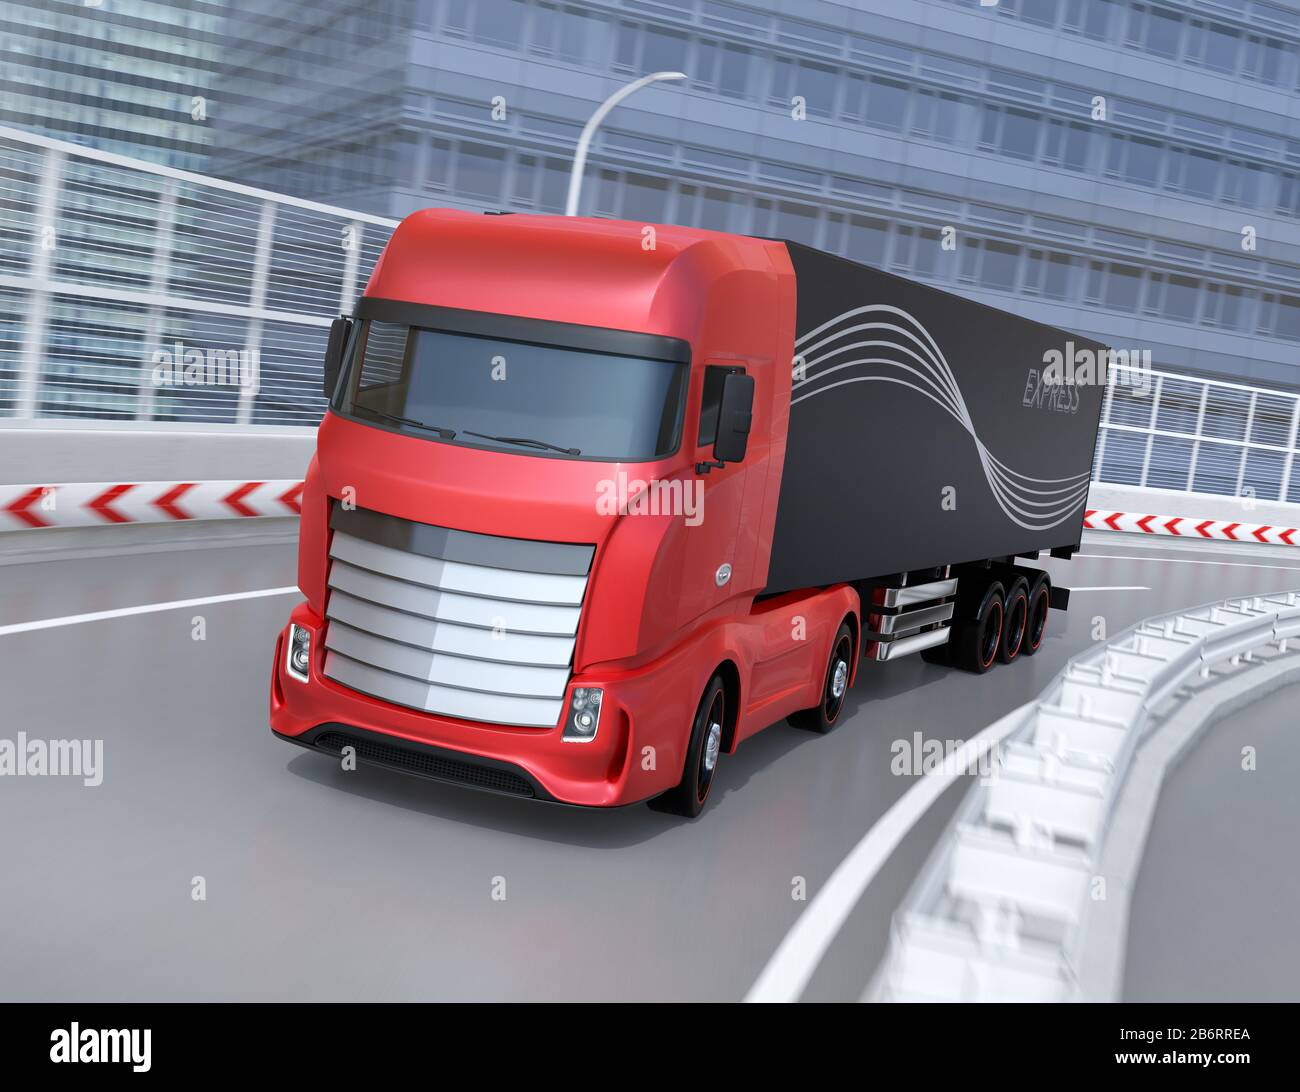 Chariot électrique lourd rouge de conception générique conduisant sur l'autoroute. Image de rendu 3D. Banque D'Images